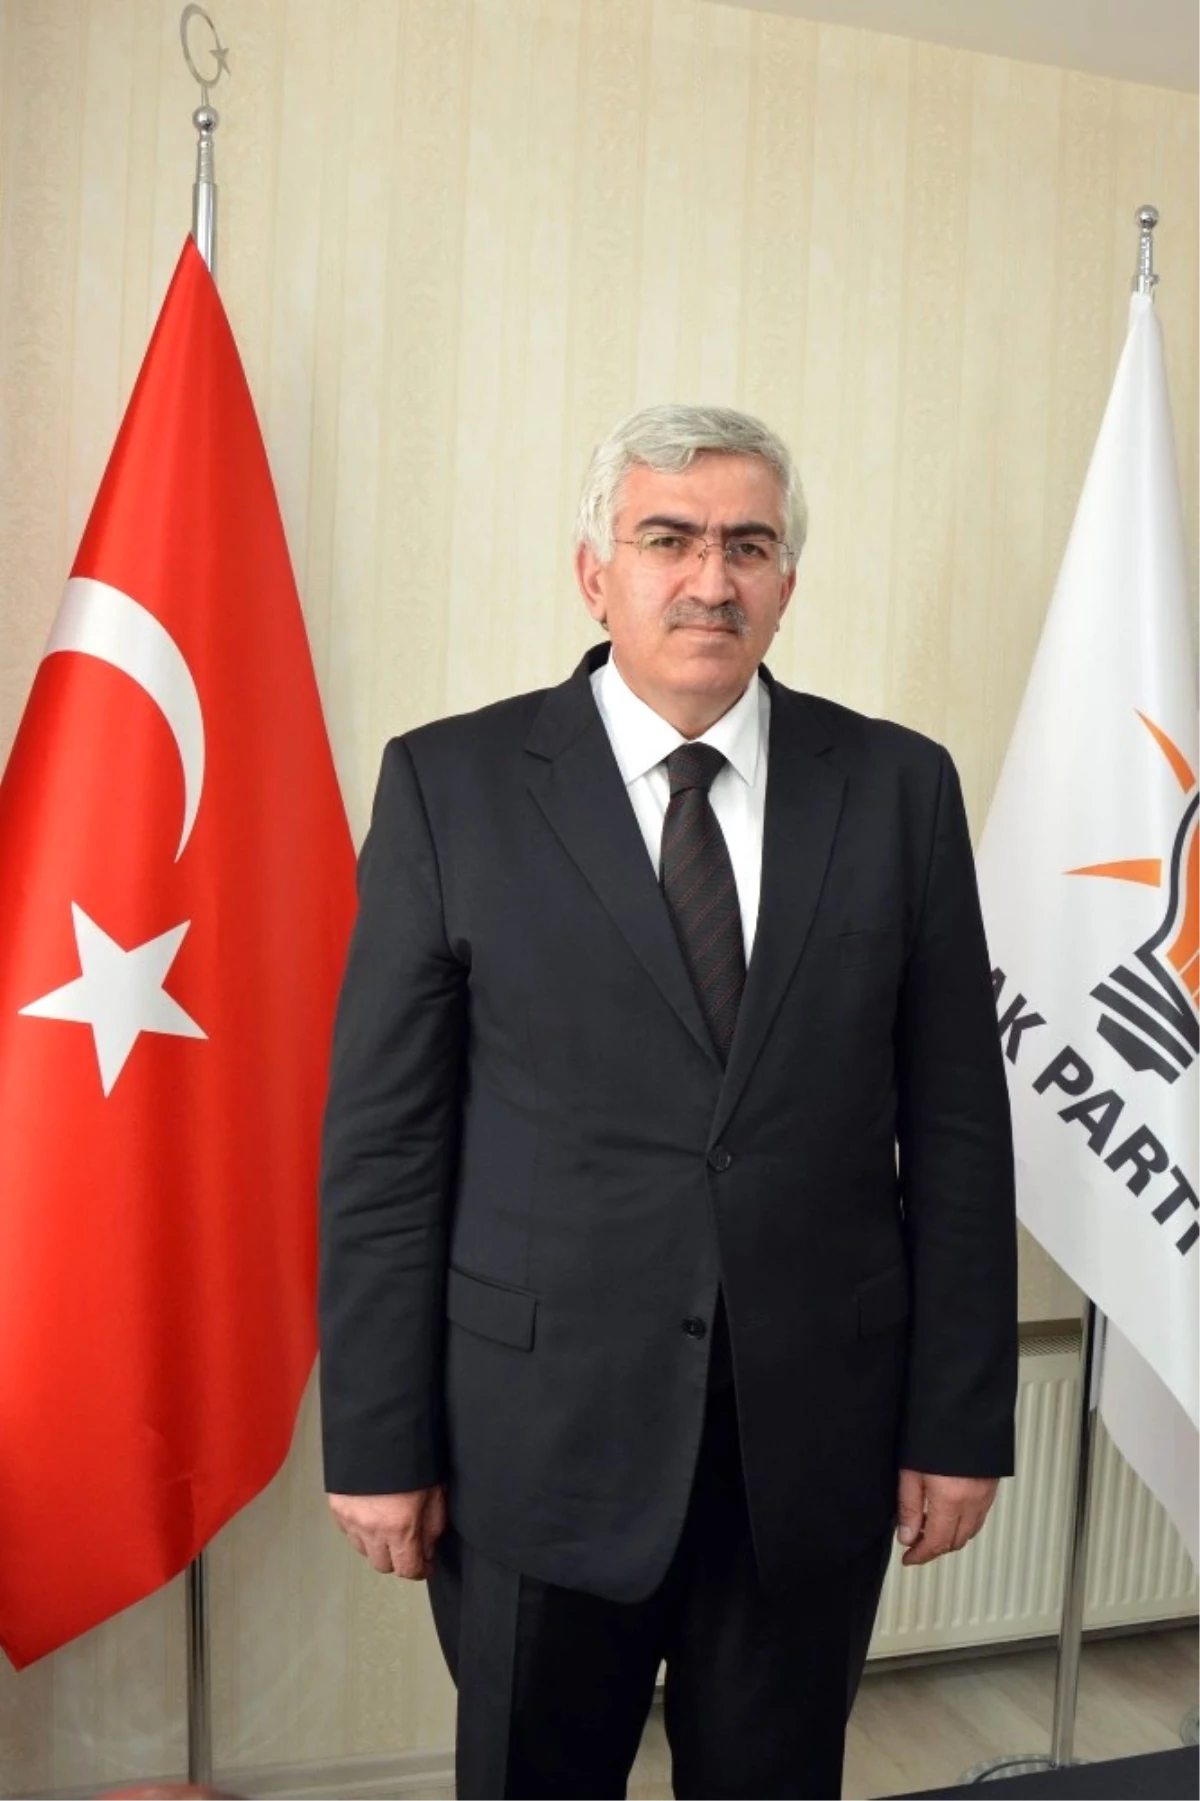 AK Parti Erzurum İl Başkanı Öz: "Basın Demokratik Hayatın Vazgeçilmez Parçası"